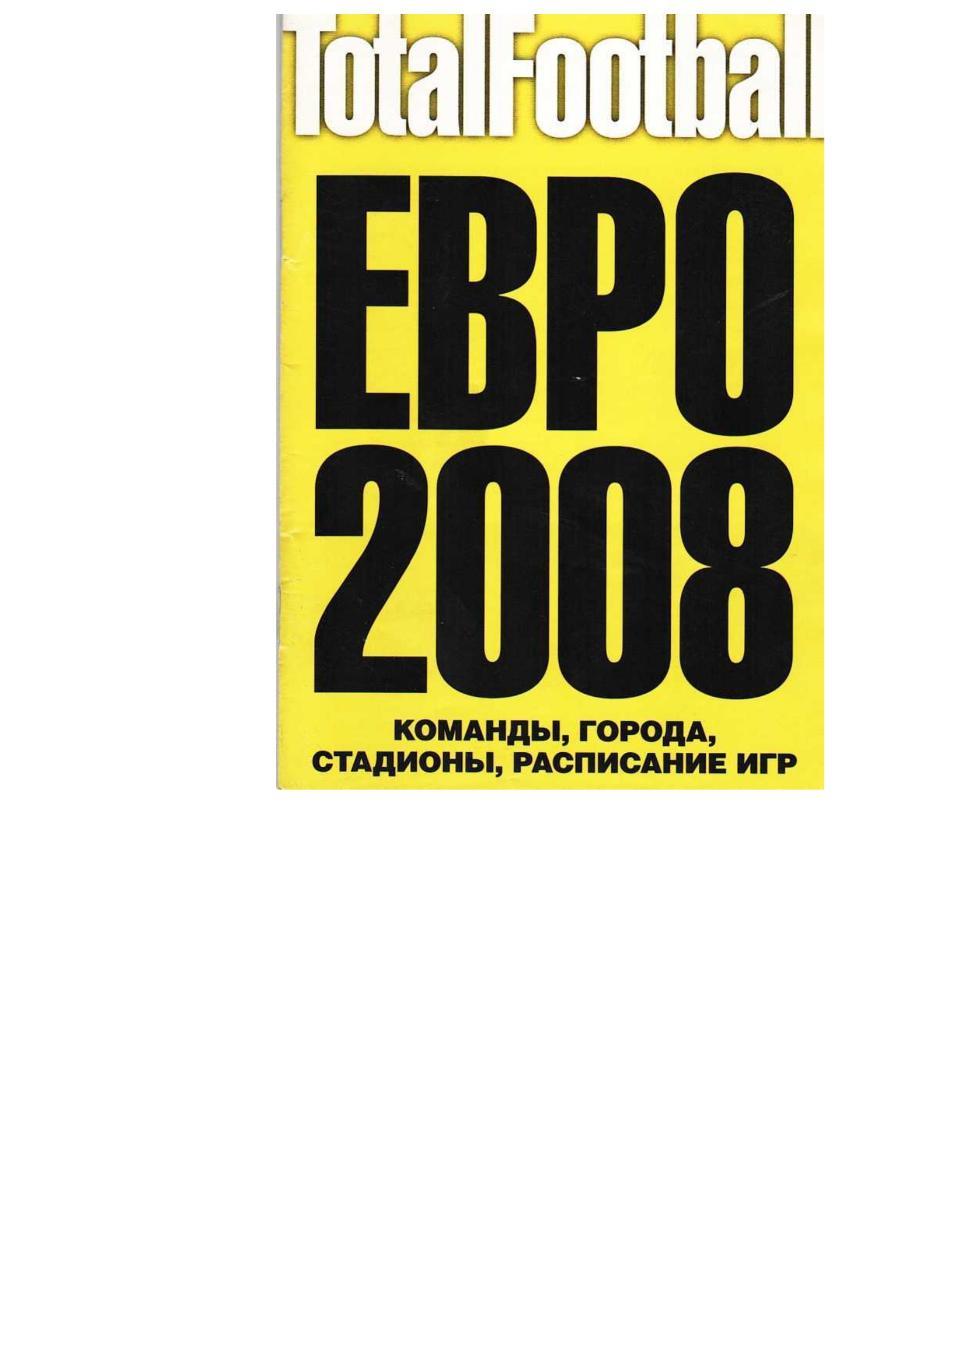 Футбол. ЕВРО 2008. Справочник.